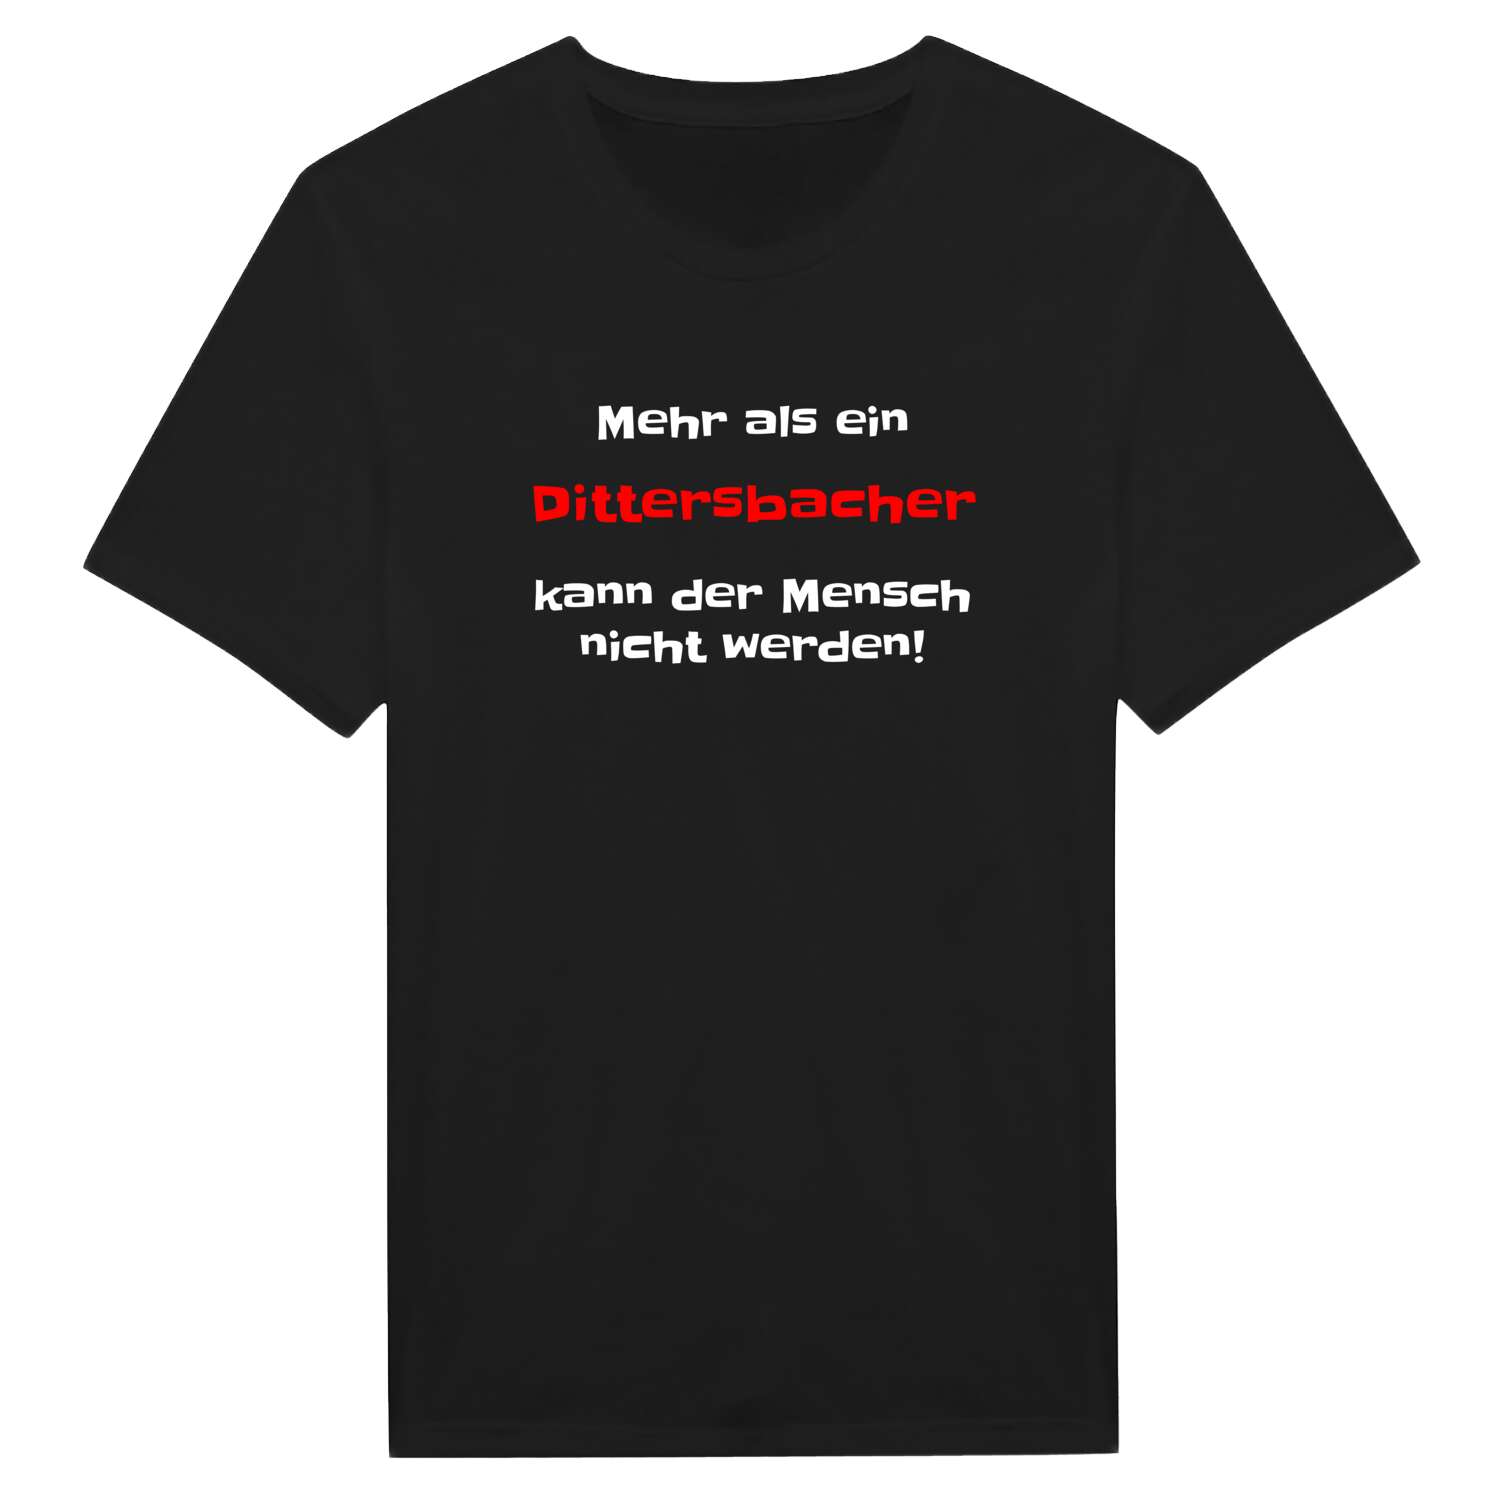 Dittersbach T-Shirt »Mehr als ein«